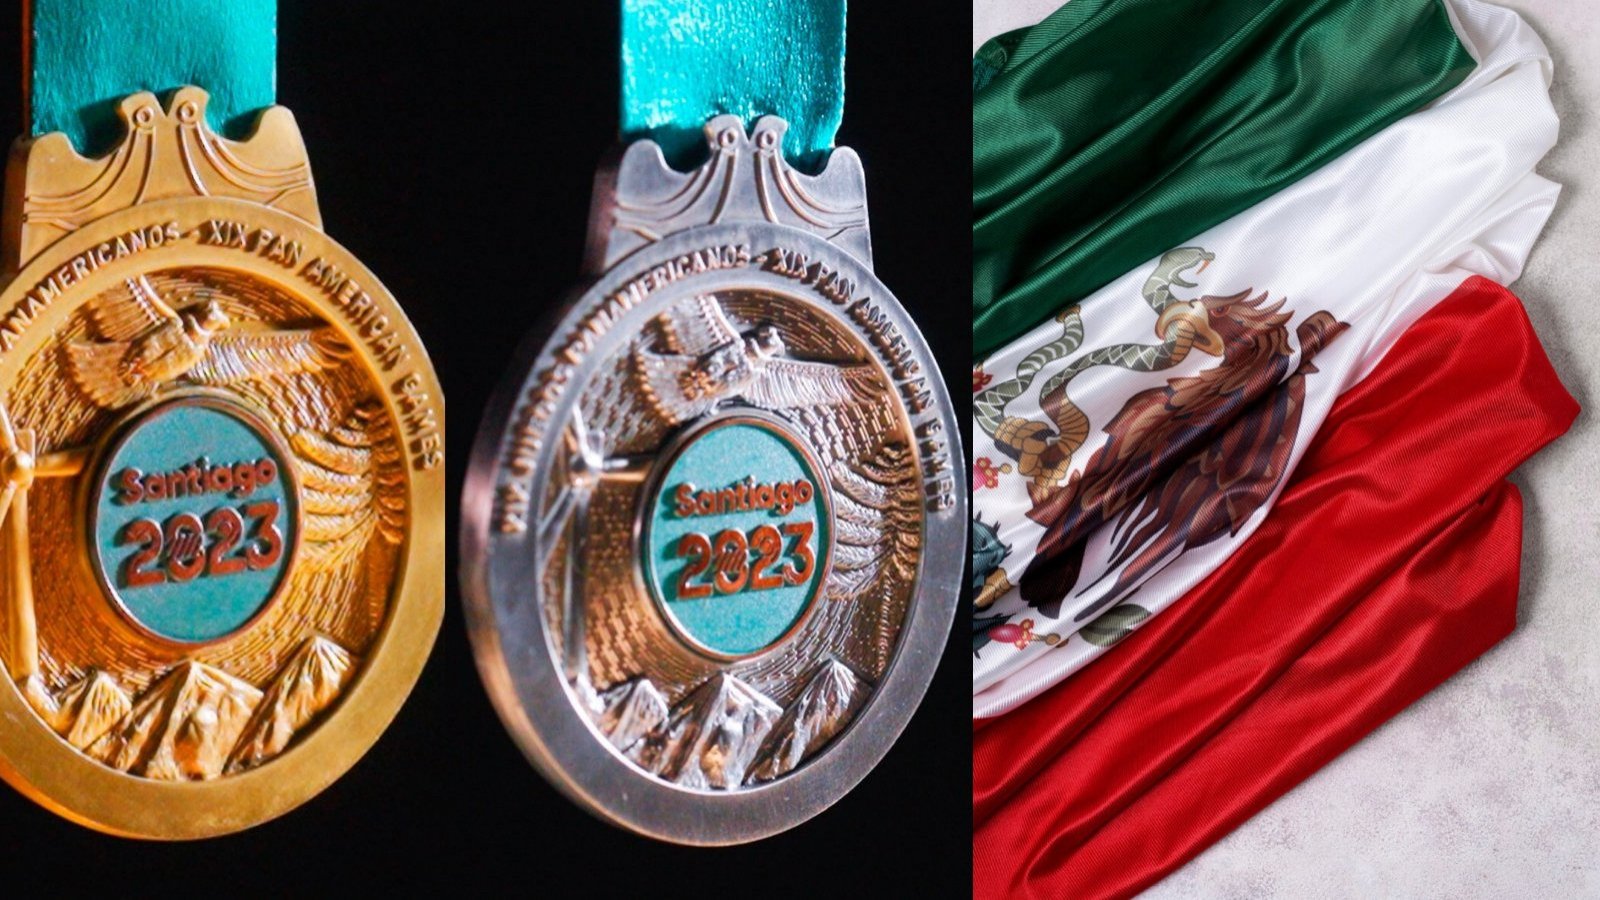 Medallero de los Juegos Panamericanos 2023 actualizado: México gana el  tercer lugar